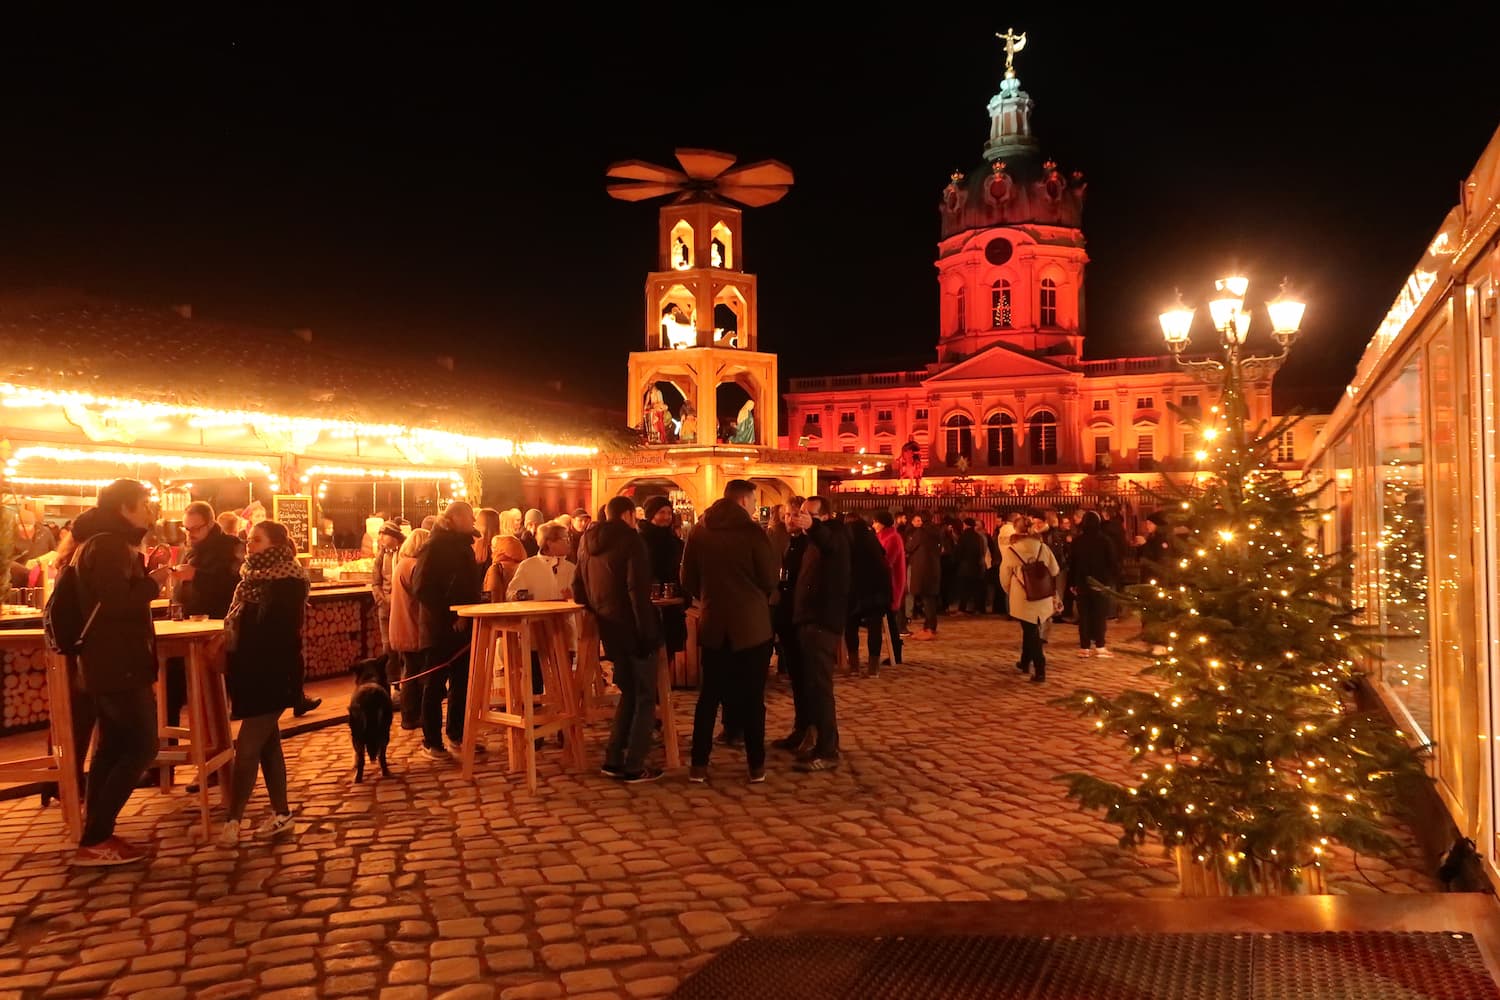 ドイツのクリスマスマーケット